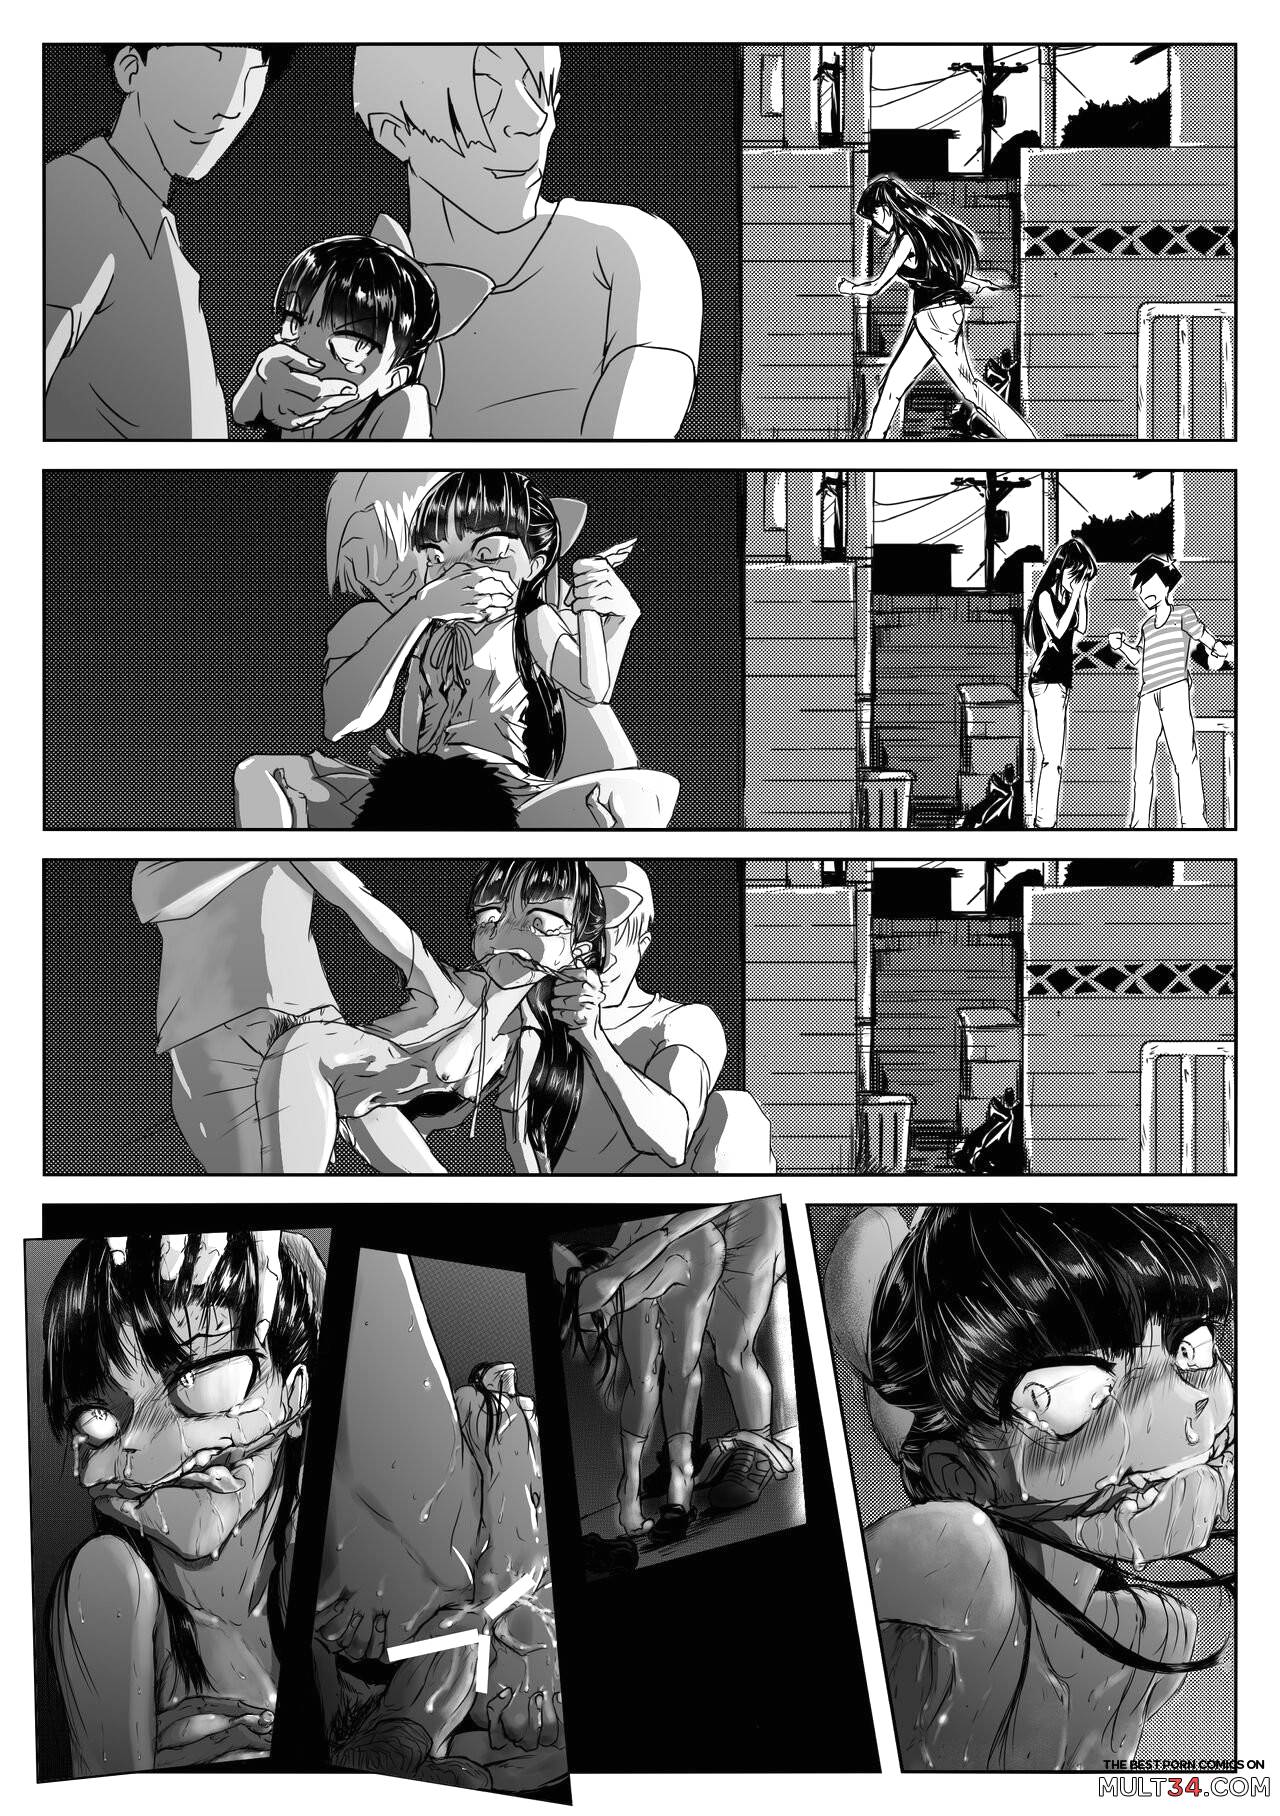 Komi-san Comics page 10